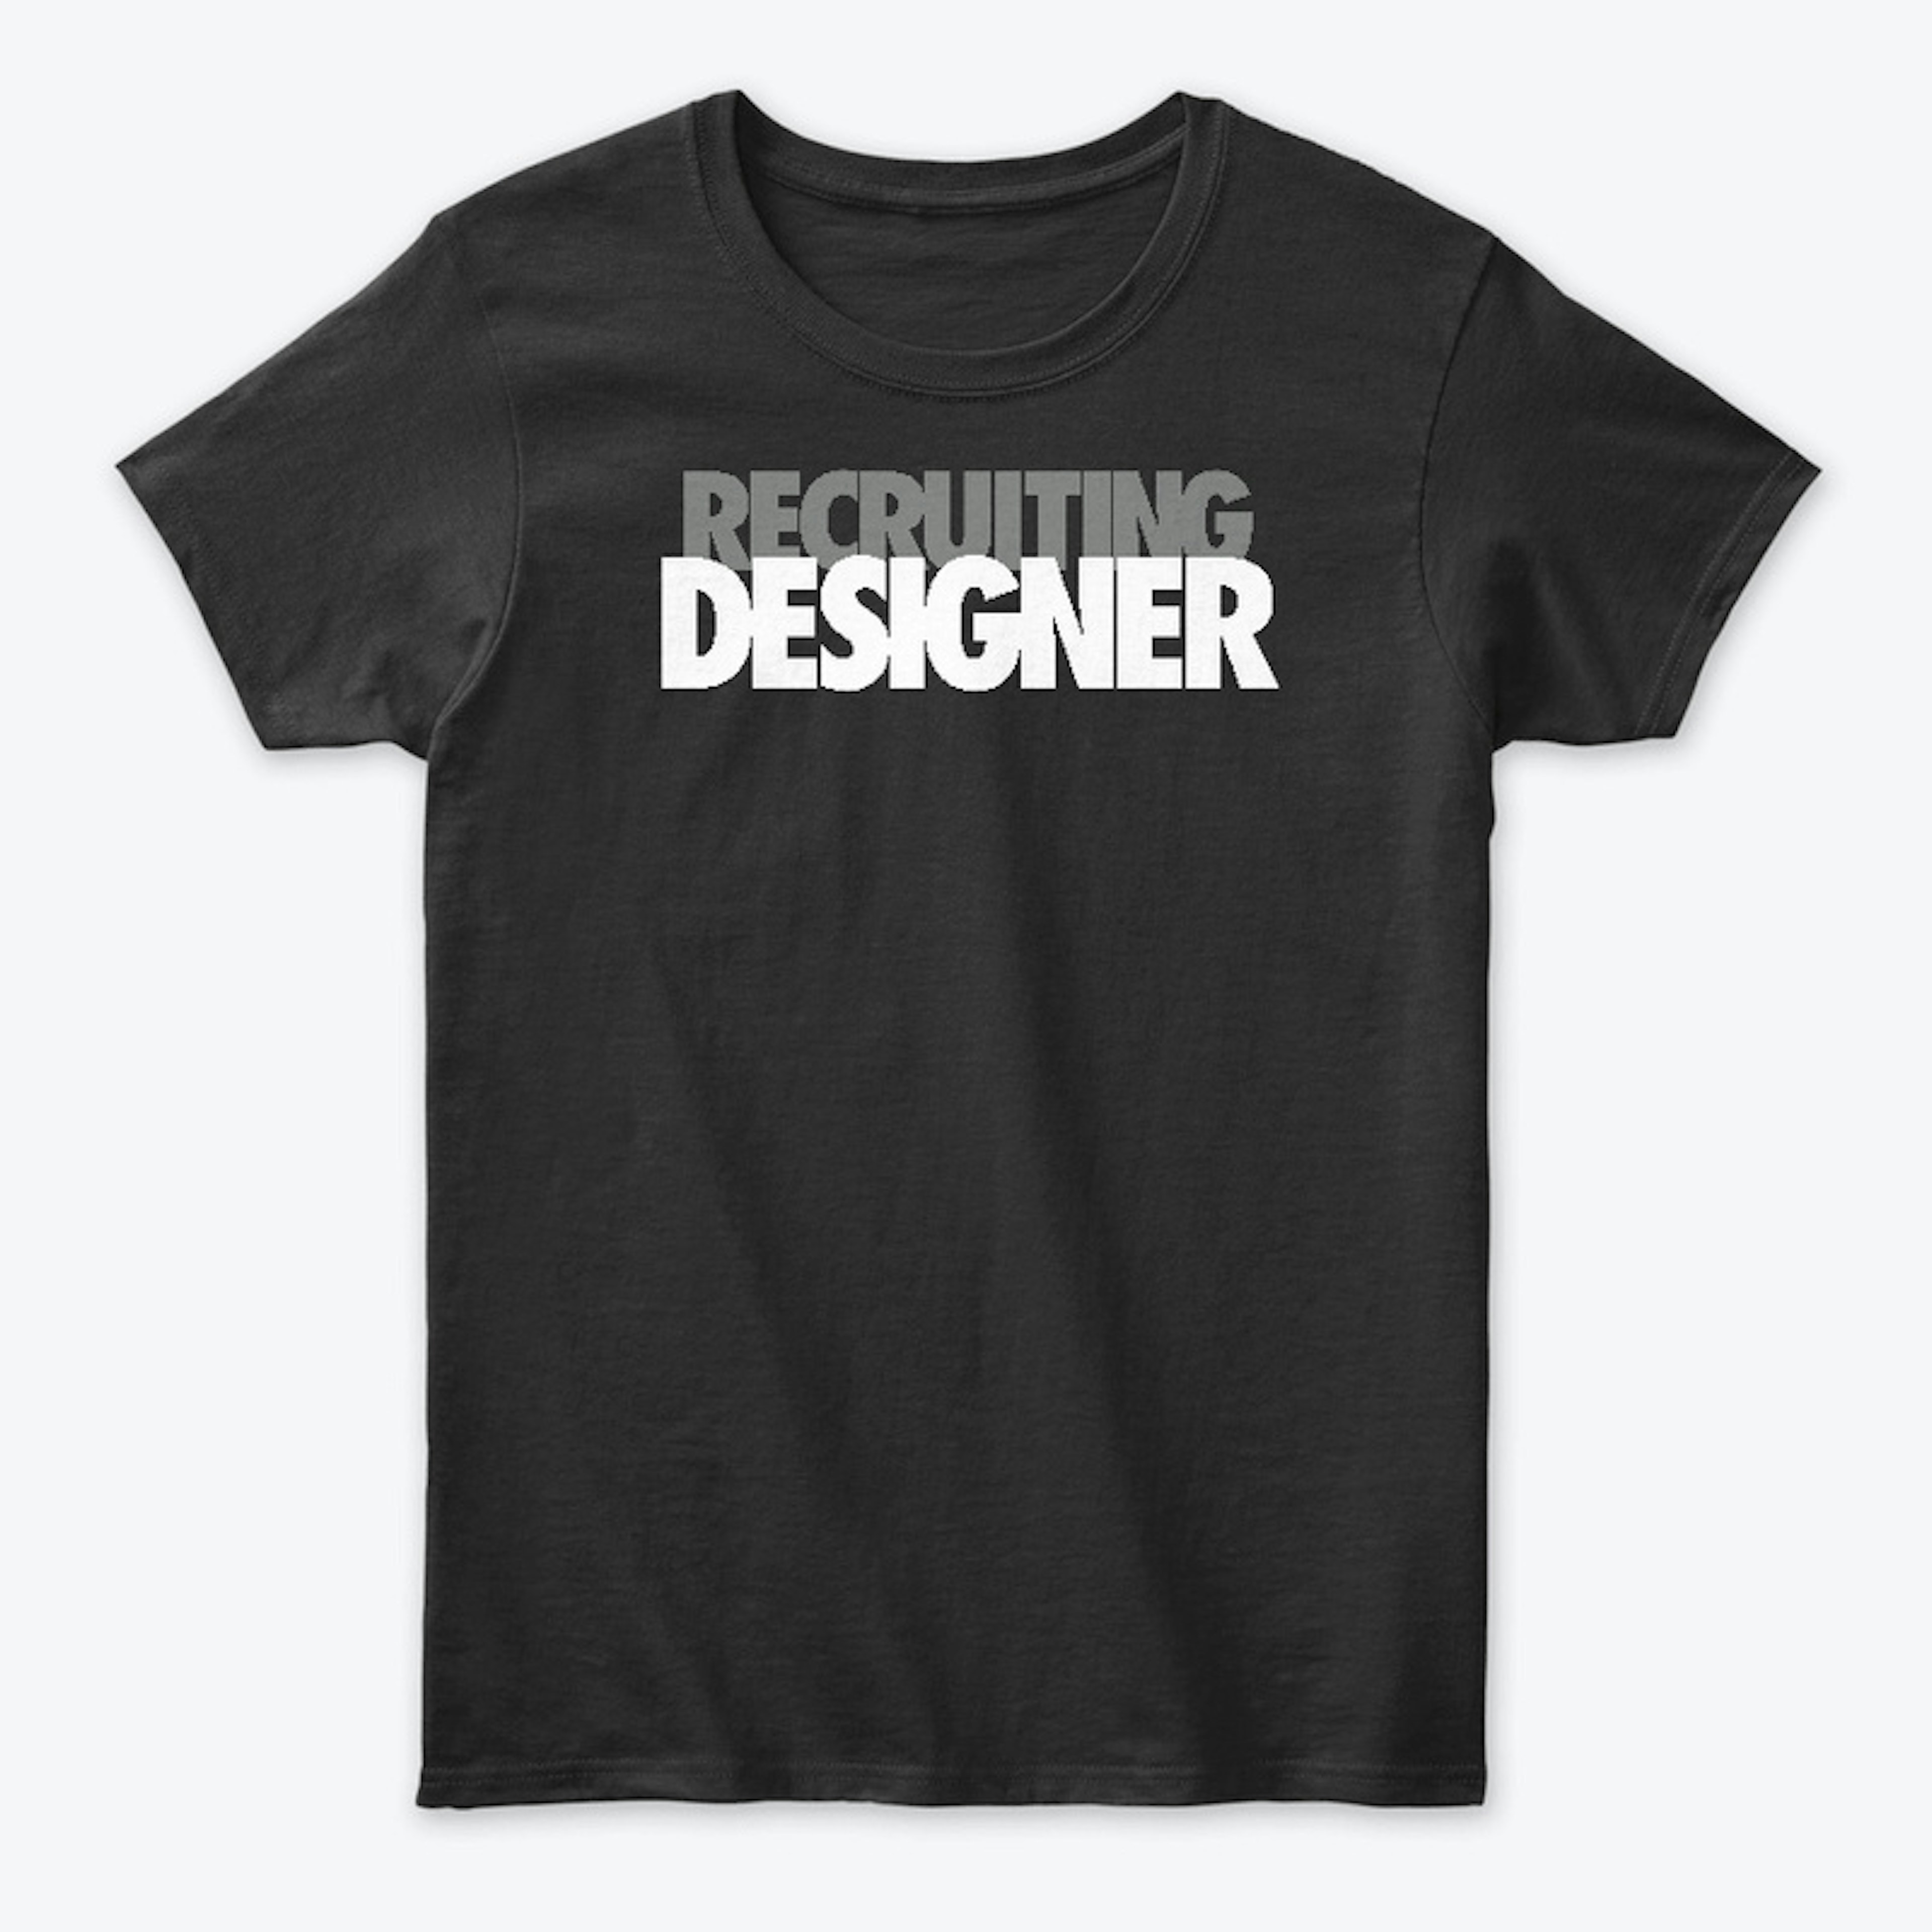 Recruiting Designer Tee